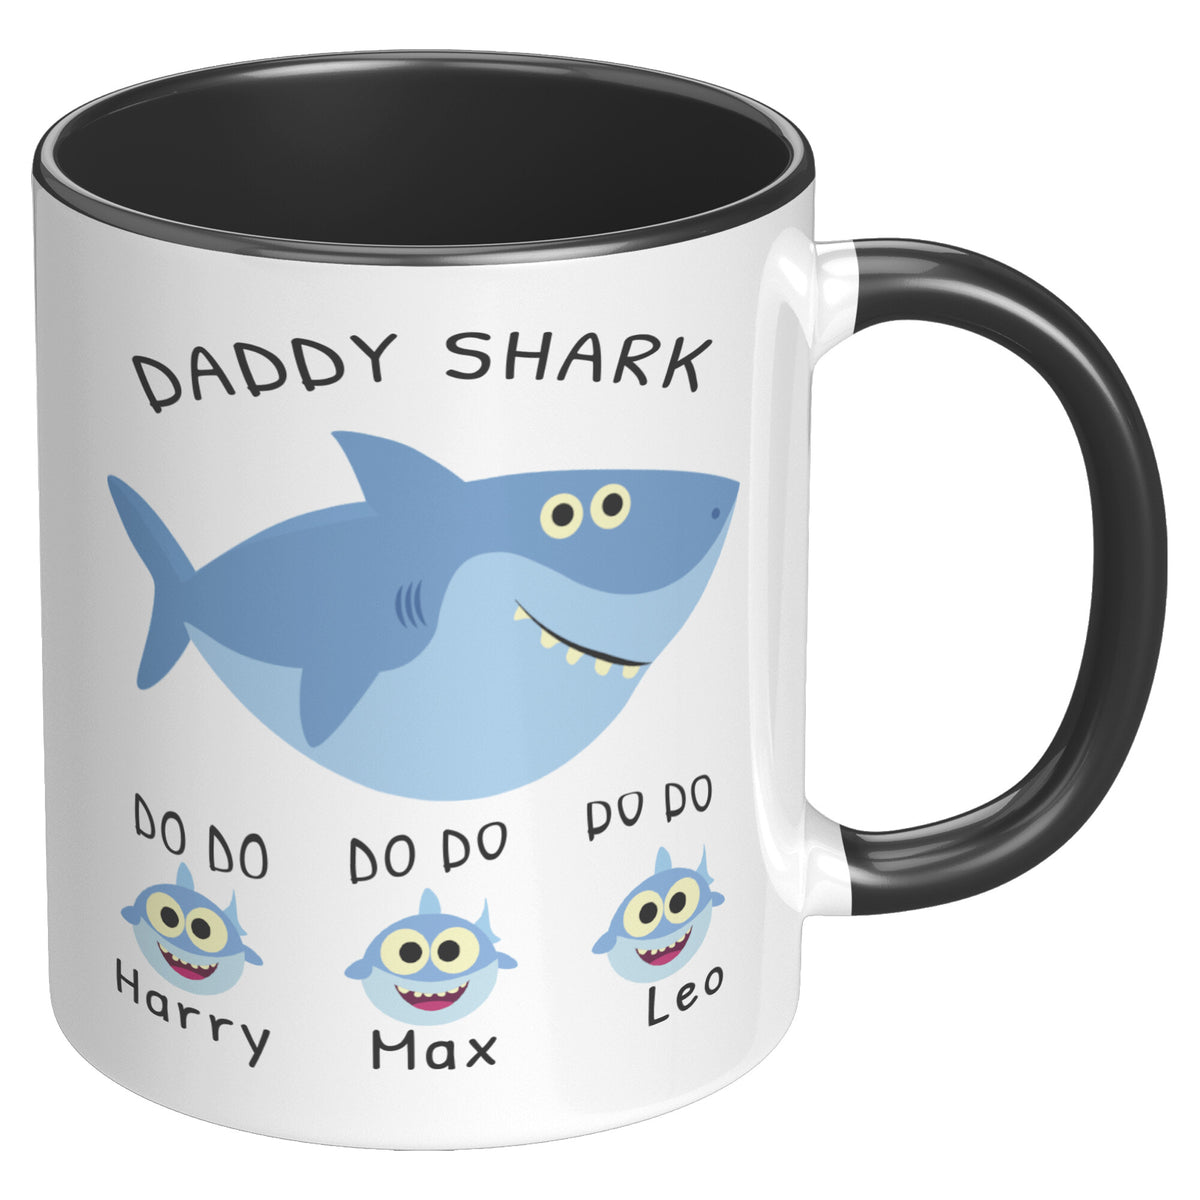 Personalized New Dad Mug - Daddy Shark Accent Coffee Mug 11oz